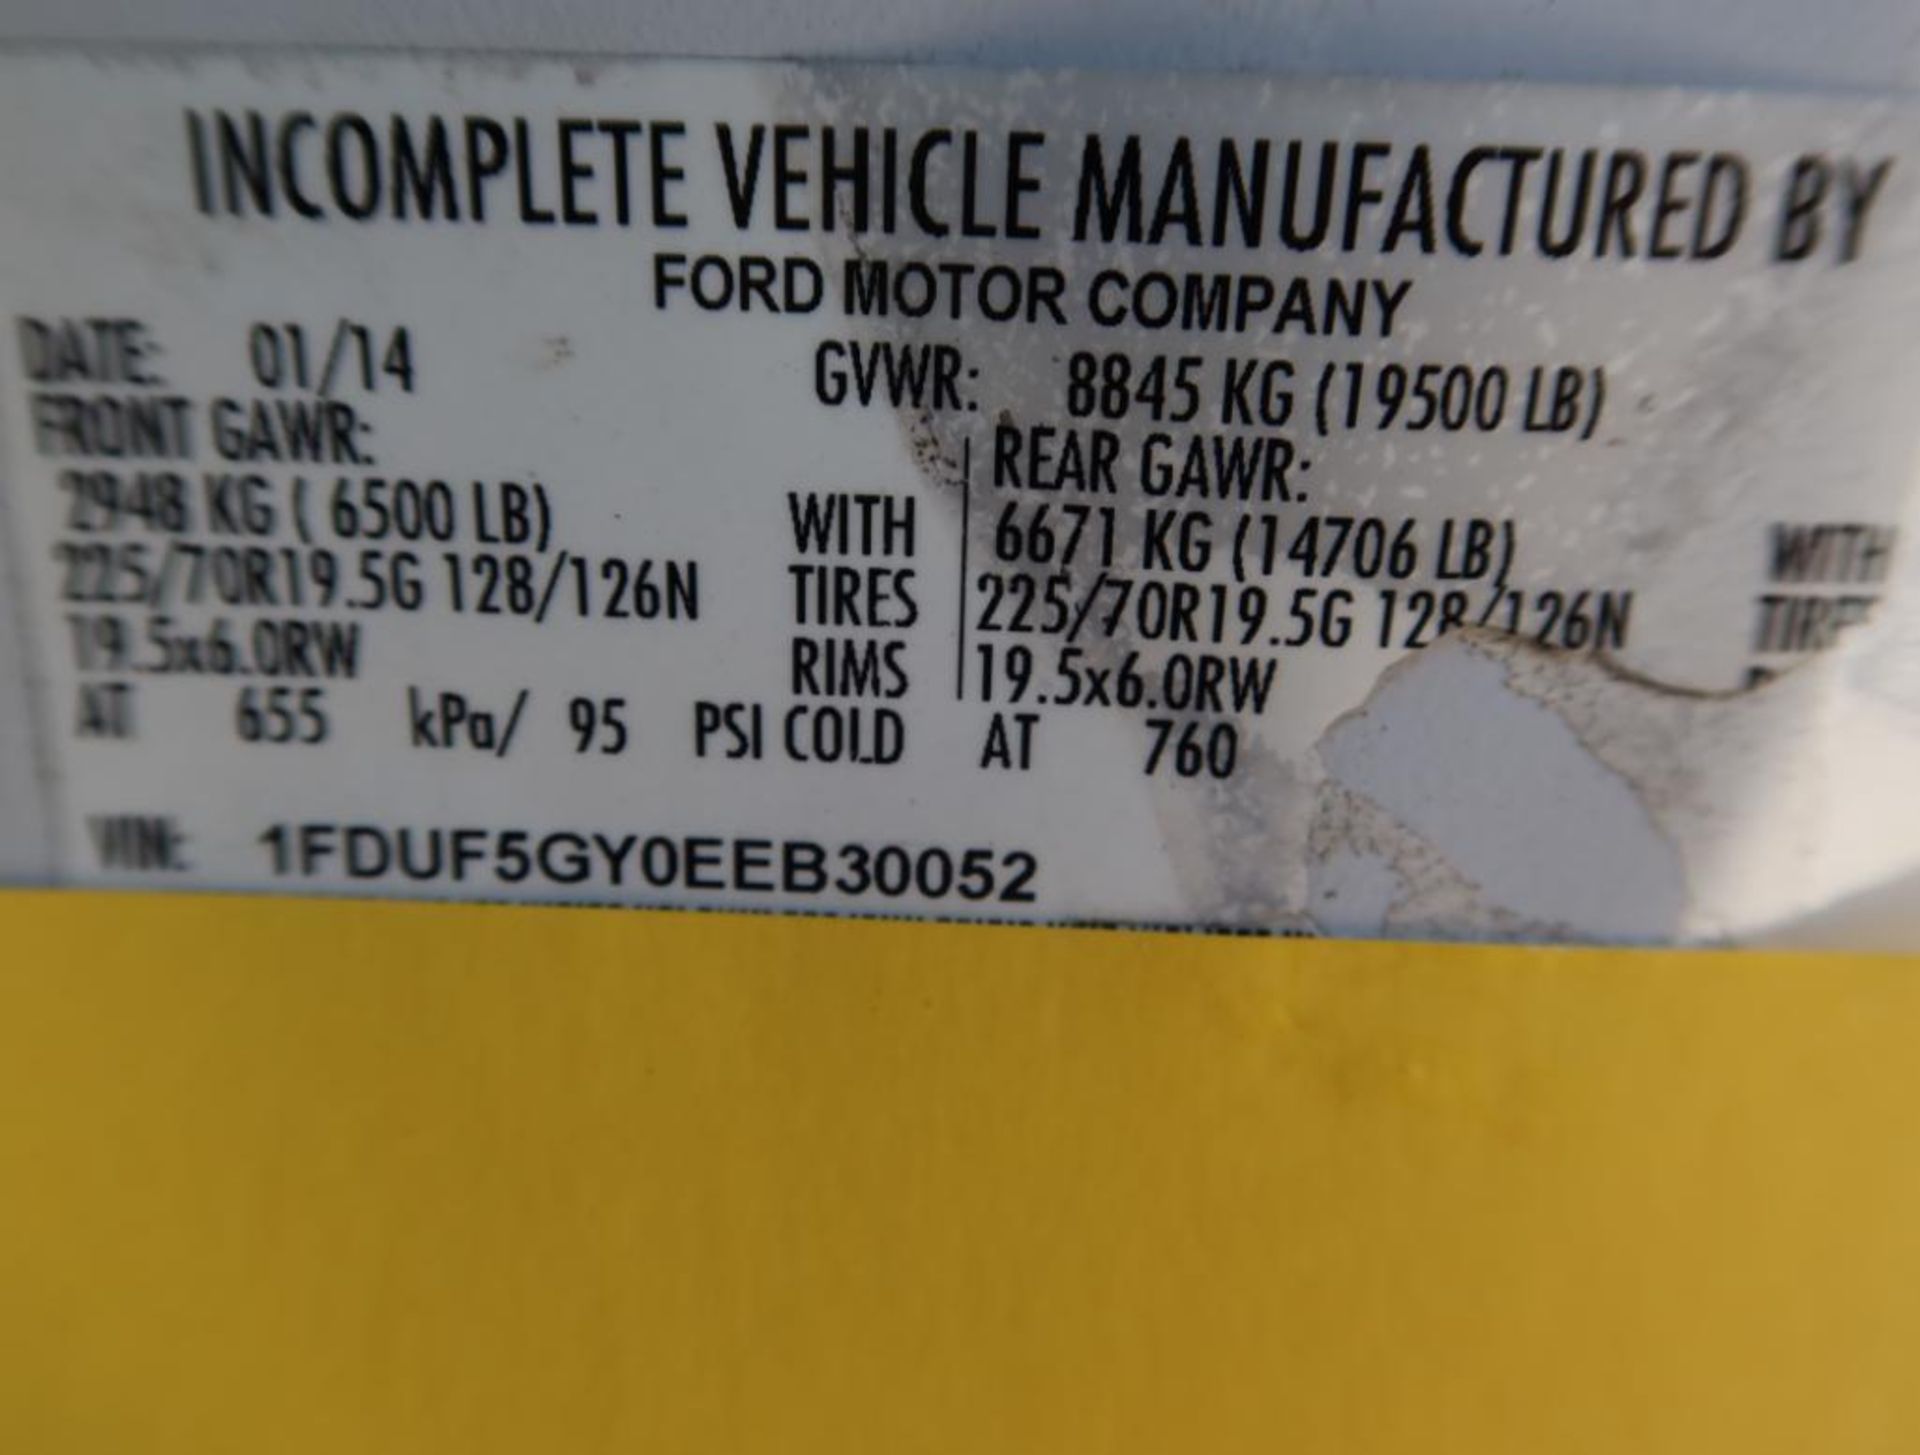 2014 Ford F-550 Box Truck Superduty Dual Wheel, Gas, License# 57BIKJ, VIN 1FDUF5GY0EEB30052, 102,851 - Image 7 of 7